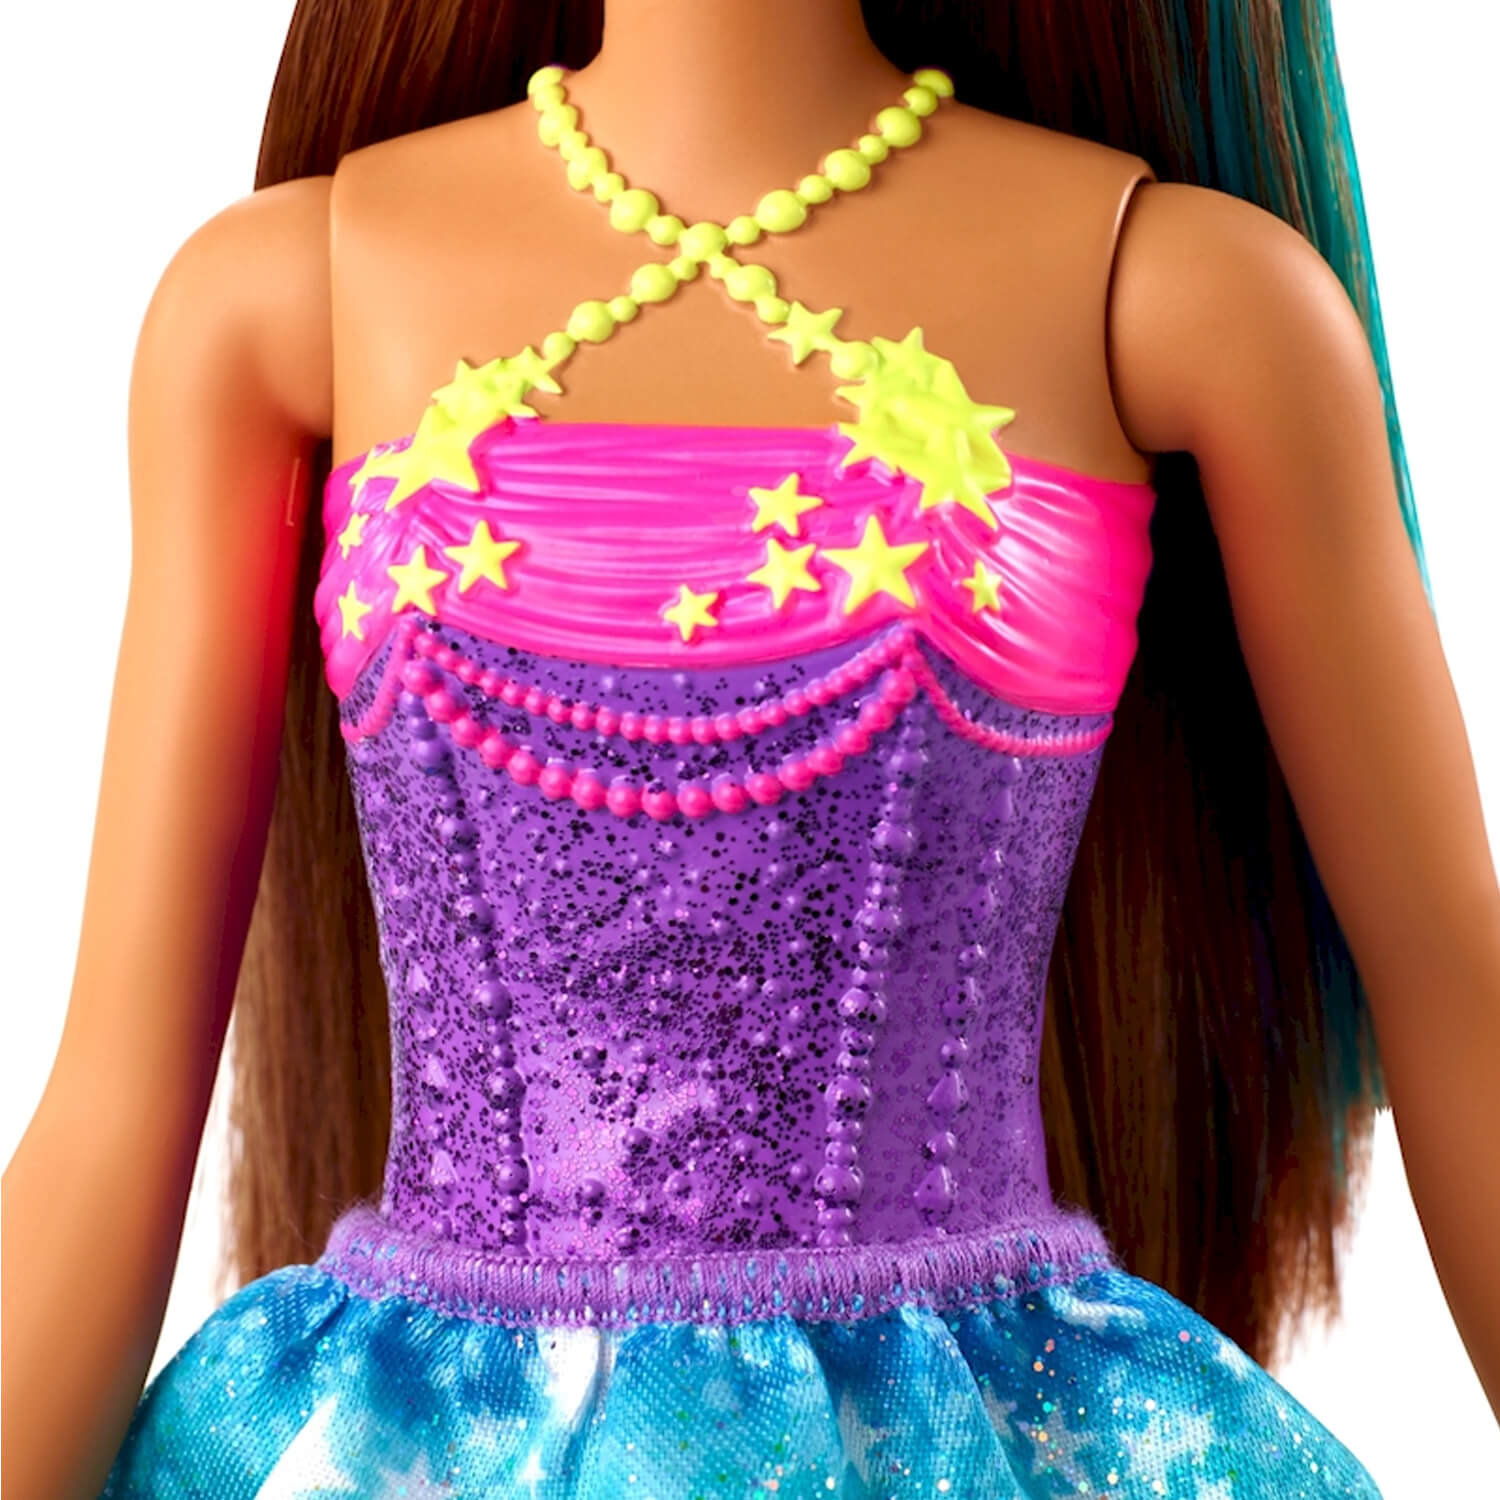 Poupée Barbie Princesse Dreamtopia : Fleurs - Jeux et jouets Mattel -  Avenue des Jeux